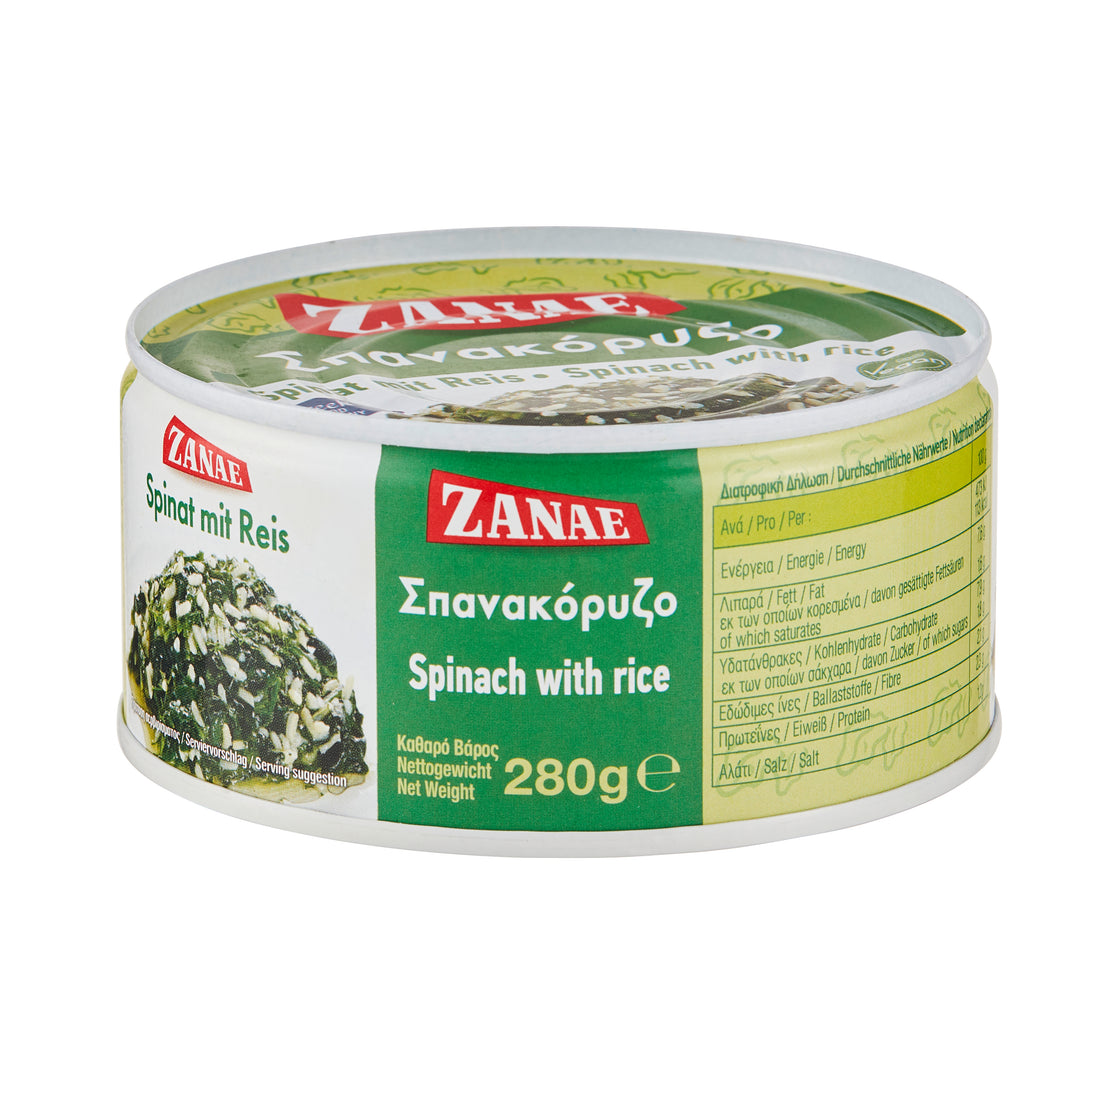 Zanae Spinat mit Reis Spanakorizo 280 g